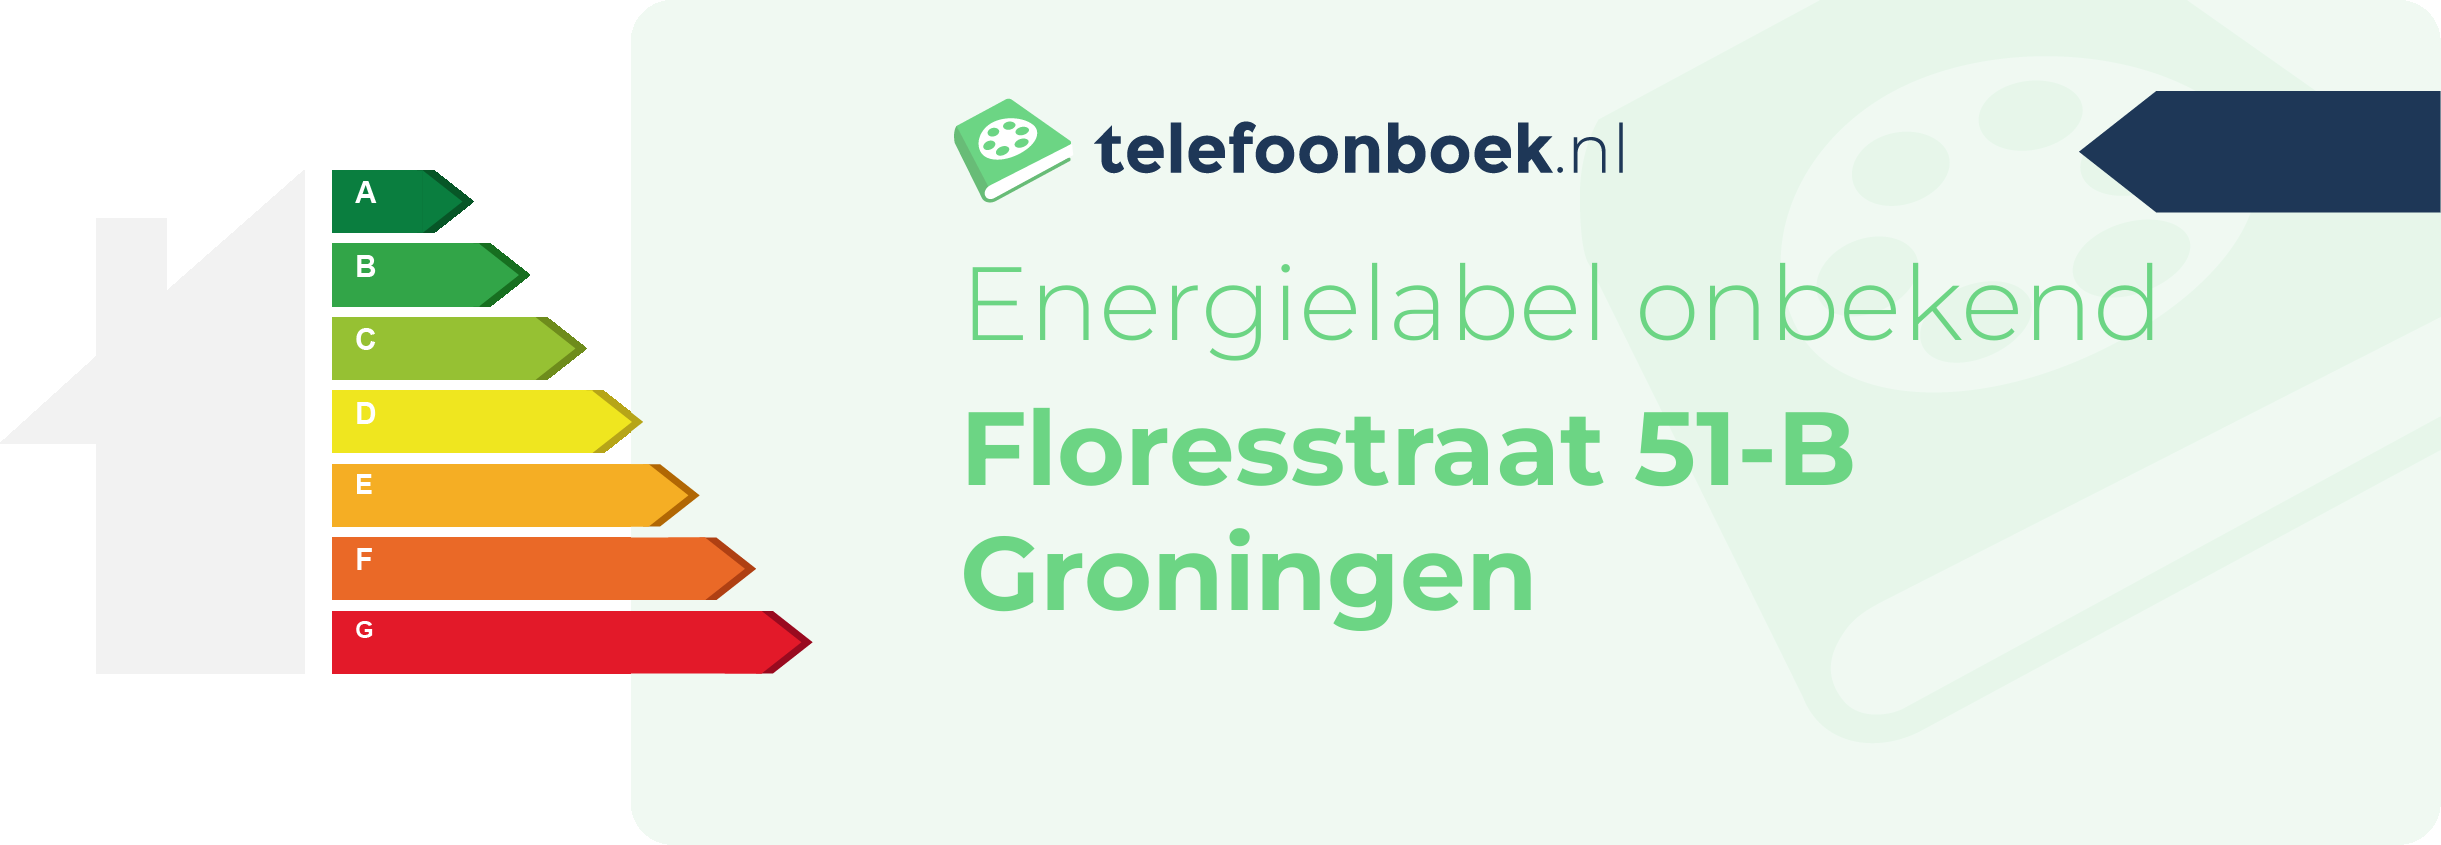 Energielabel Floresstraat 51-B Groningen